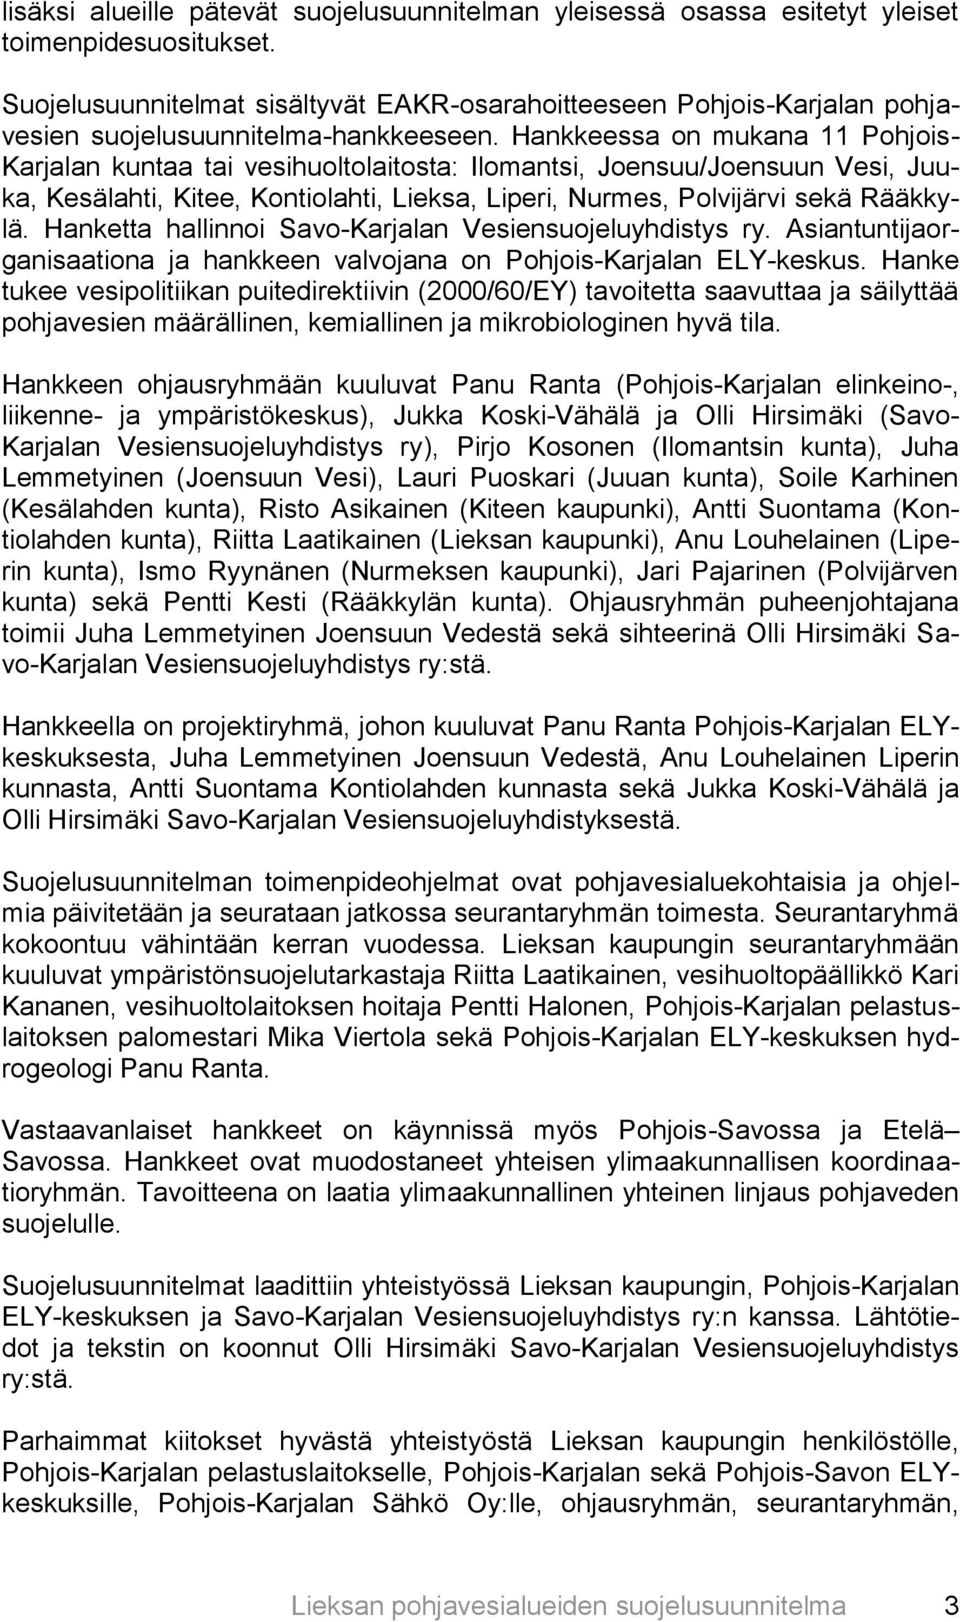 Hankkeessa on mukana 11 Pohjois- Karjalan kuntaa tai vesihuoltolaitosta: Ilomantsi, Joensuu/Joensuun Vesi, Juuka, Kesälahti, Kitee, Kontiolahti, Lieksa, Liperi, Nurmes, Polvijärvi sekä Rääkkylä.